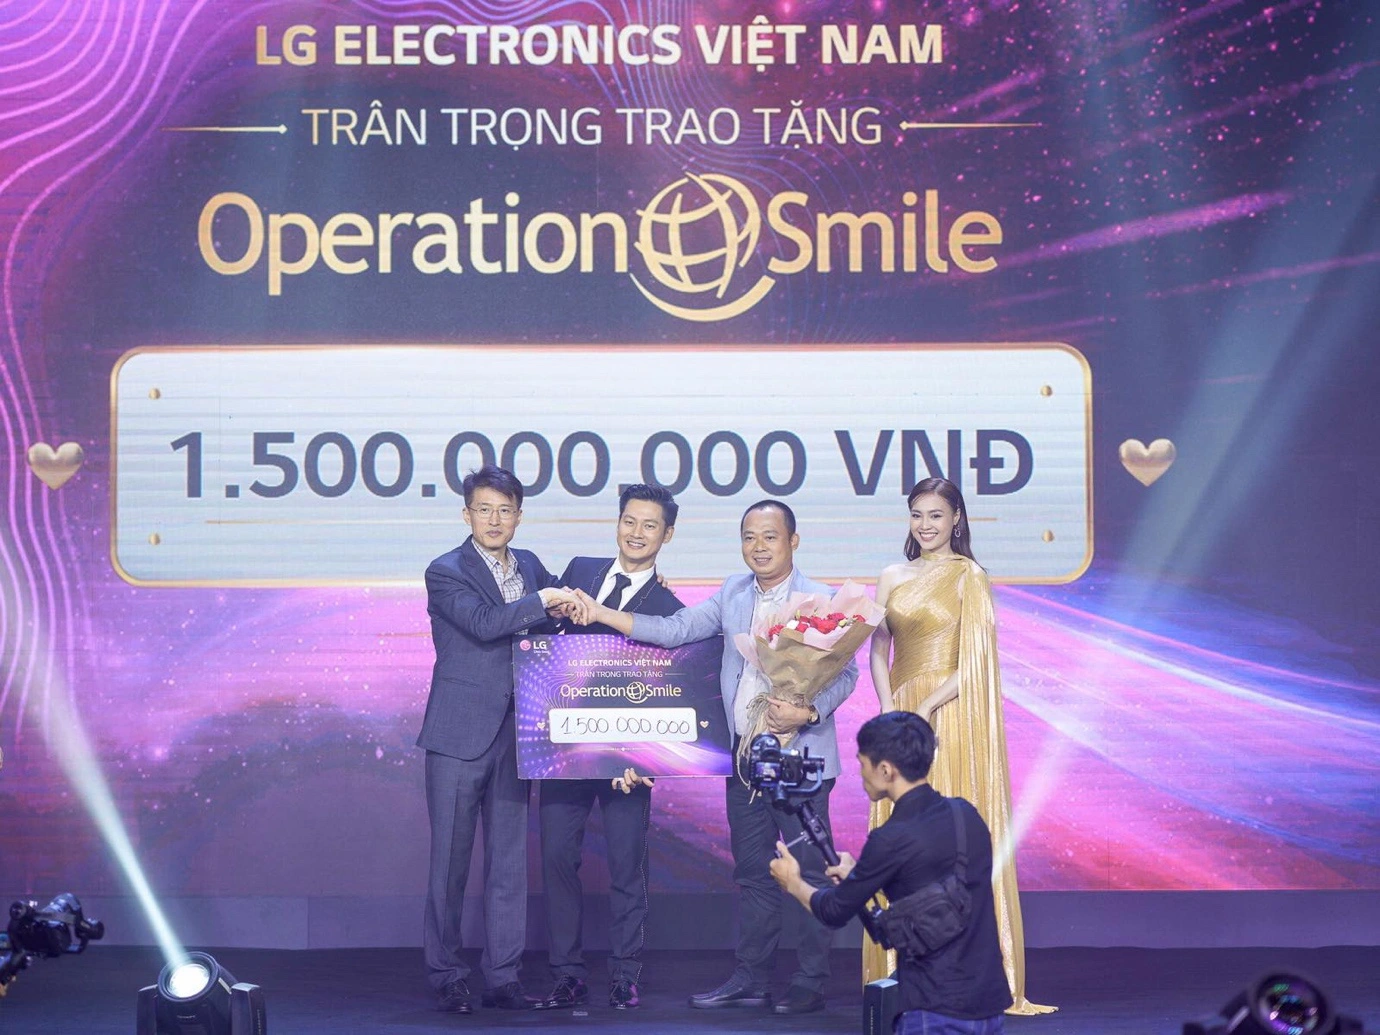 Hàng loạt người đẹp Việt bất ngờ hội ngộ tại sự kiện ra mắt TV OLED 8K đầu tiên trên thế giới - Ảnh 8.